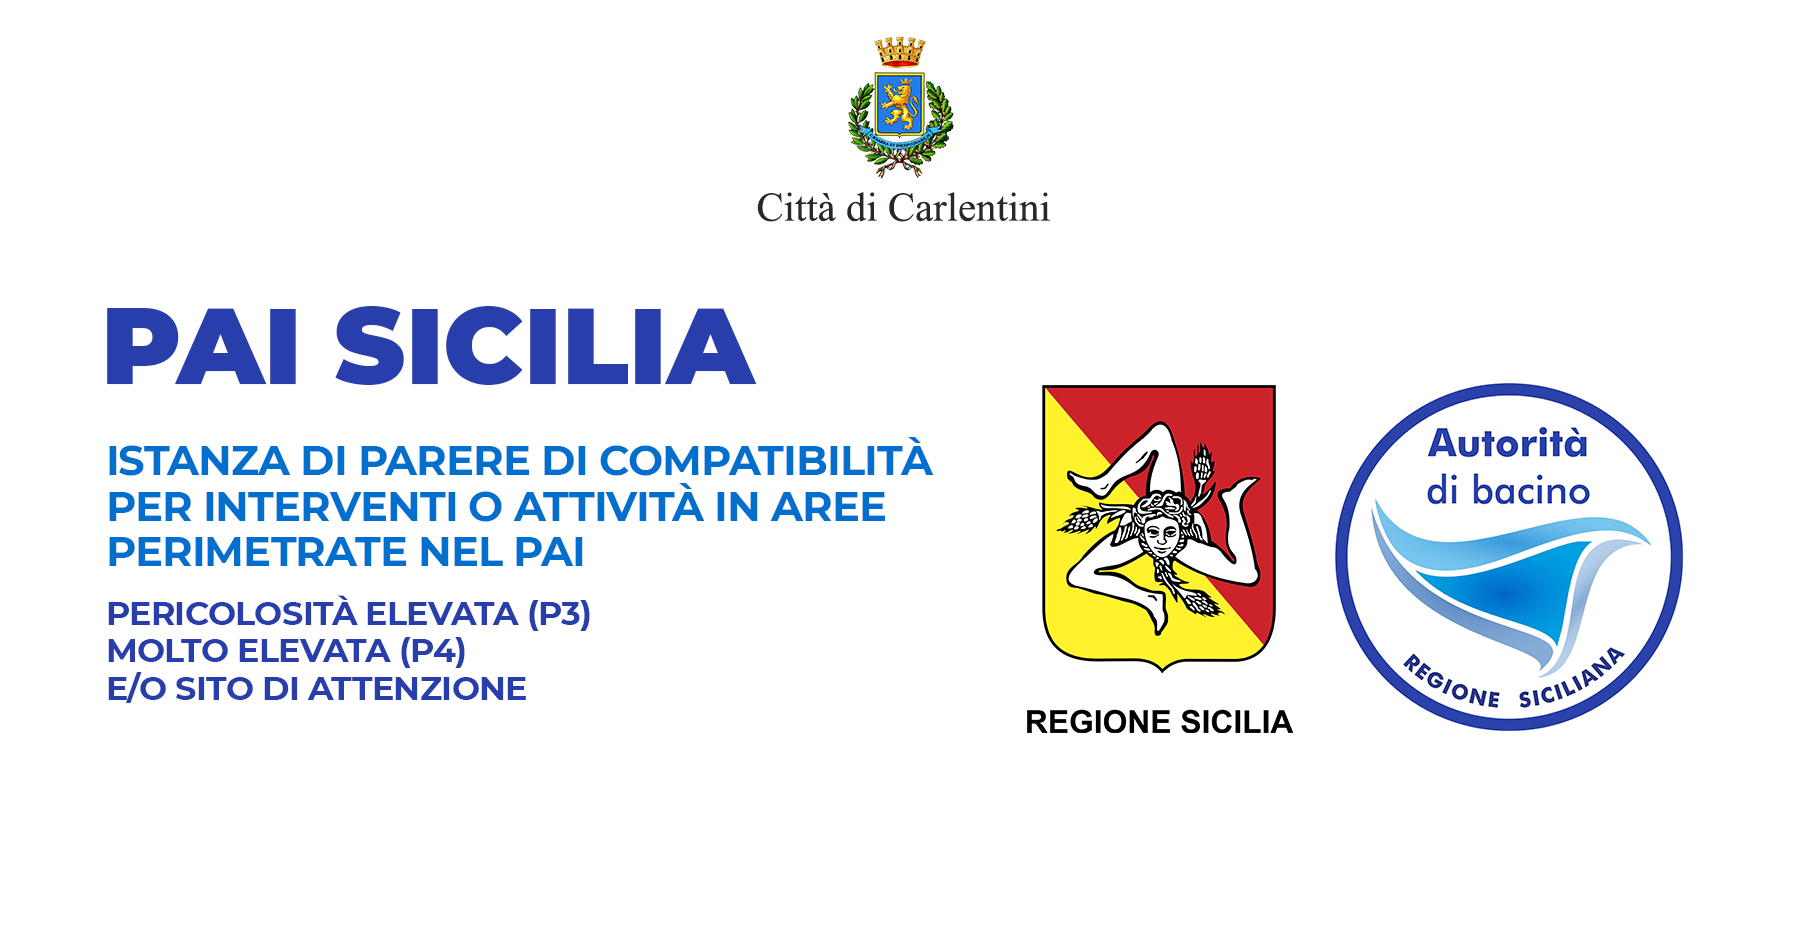 PAI Sicilia: modulistica per istanza di parere di compatibilità per intervento o attività in aree perimetrate nel PAI